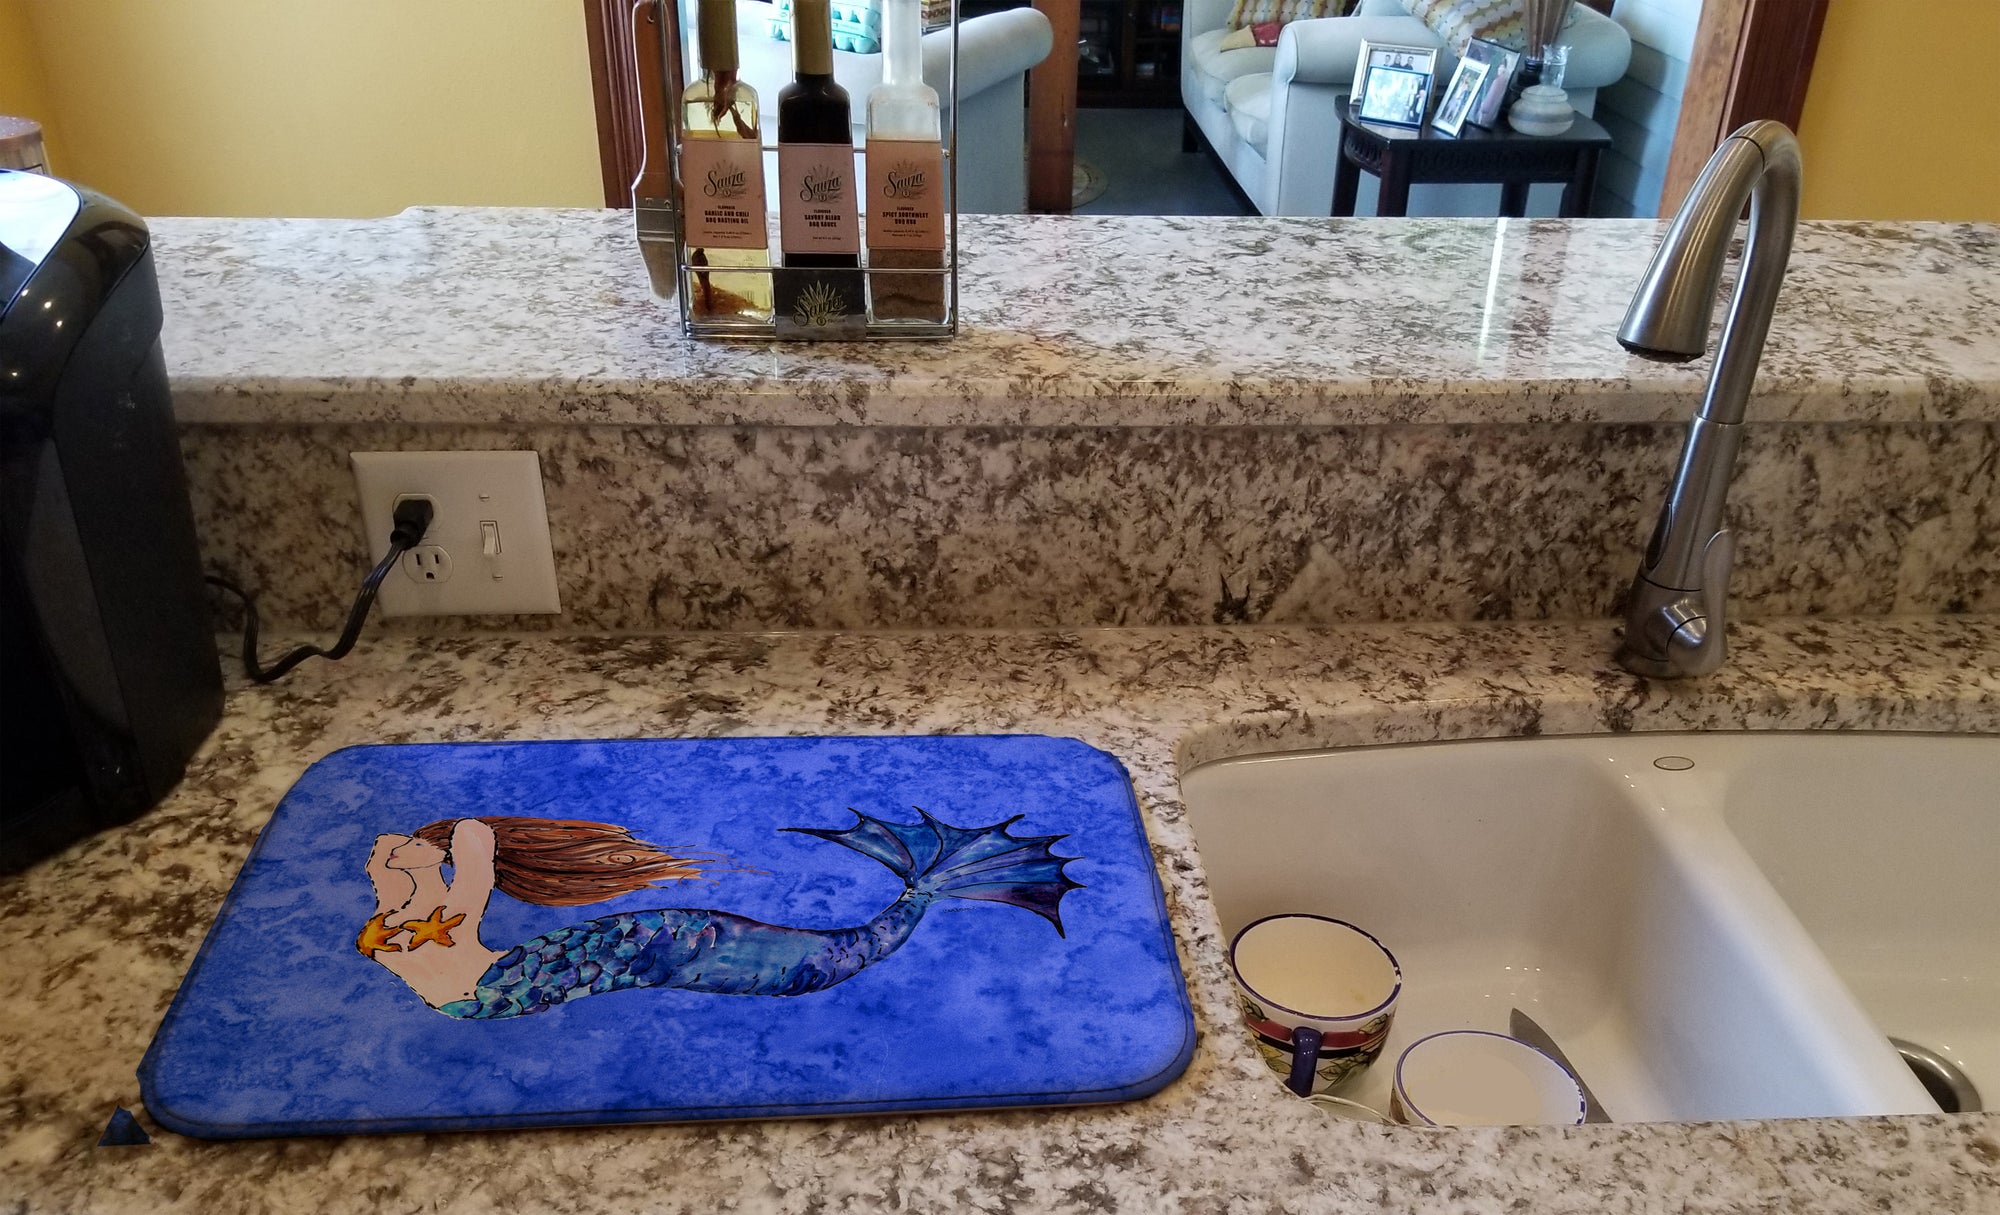 Brunette Mermaid on Blue Dish Drying Mat 8725DDM